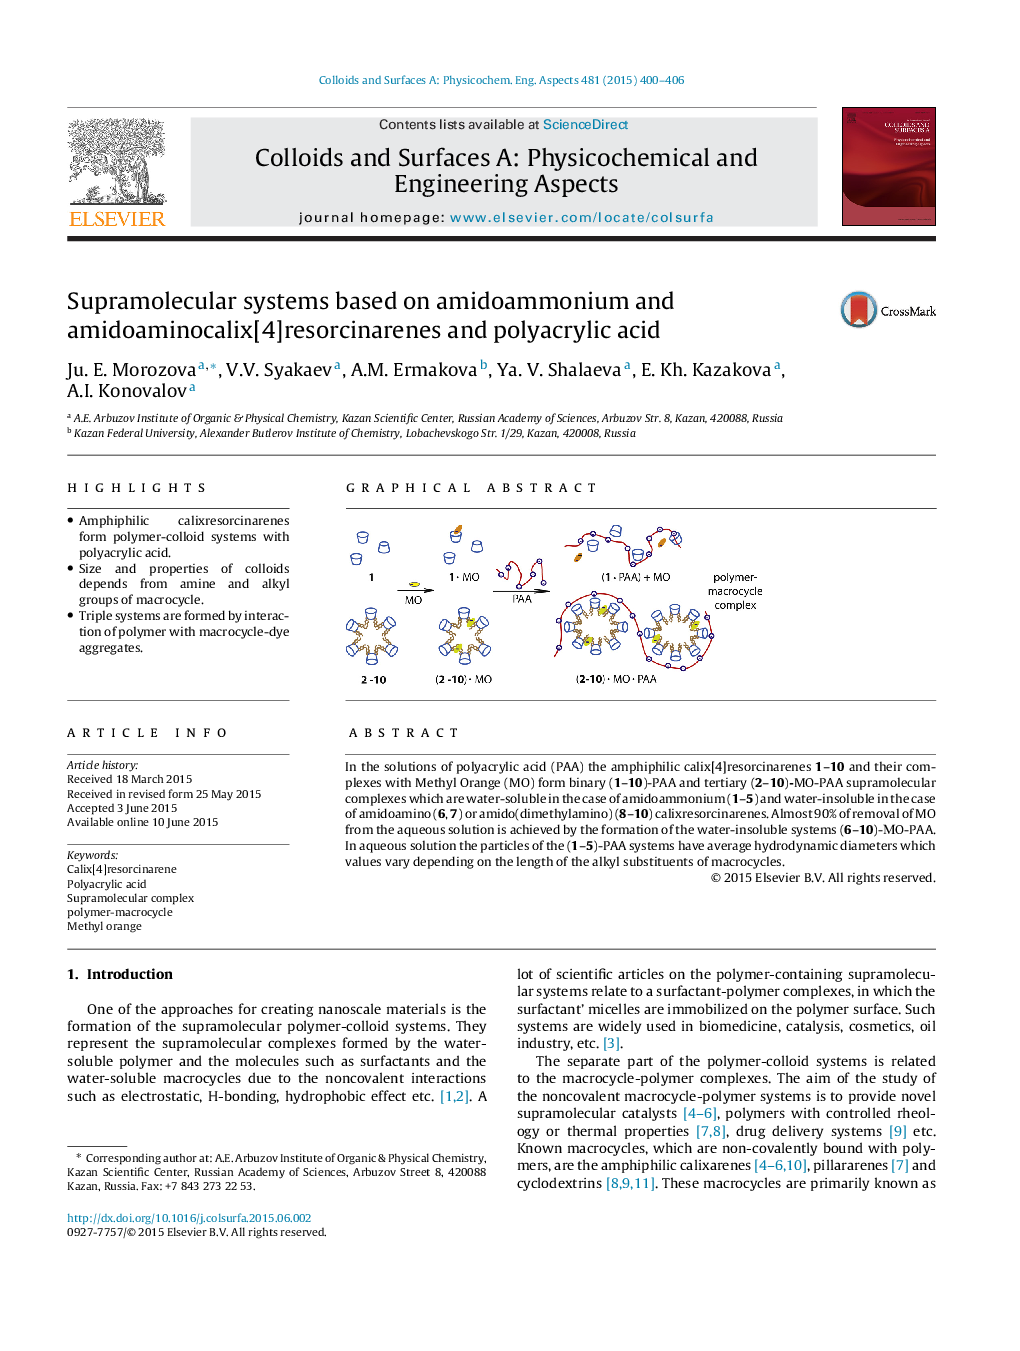 Supramolecular systems based on amidoammonium and amidoaminocalix[4]resorcinarenes and polyacrylic acid